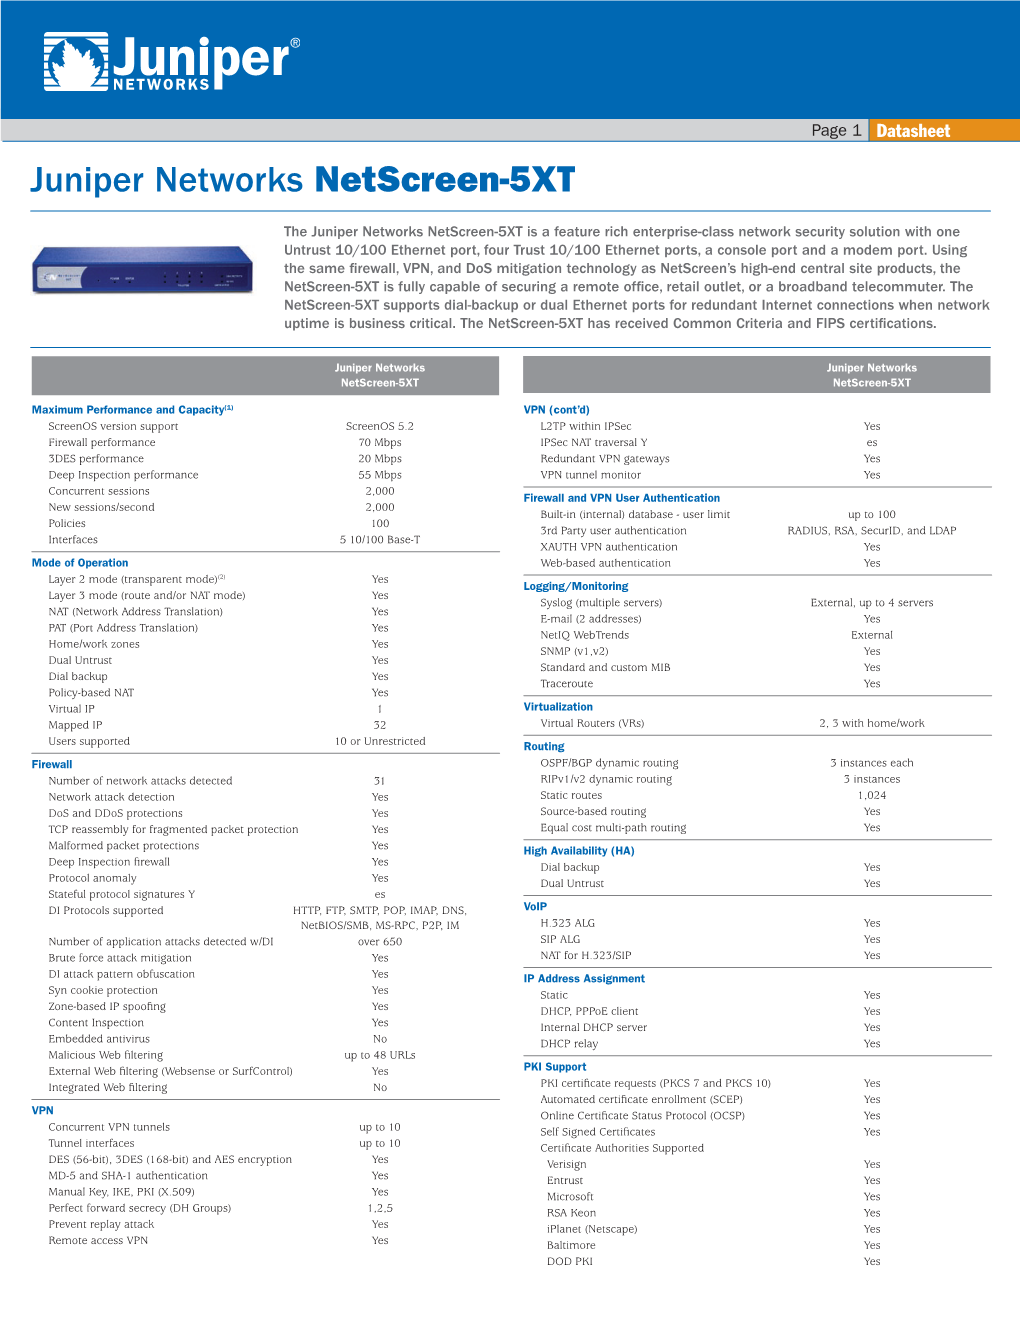 Juniper Networks Netscreen-5XT